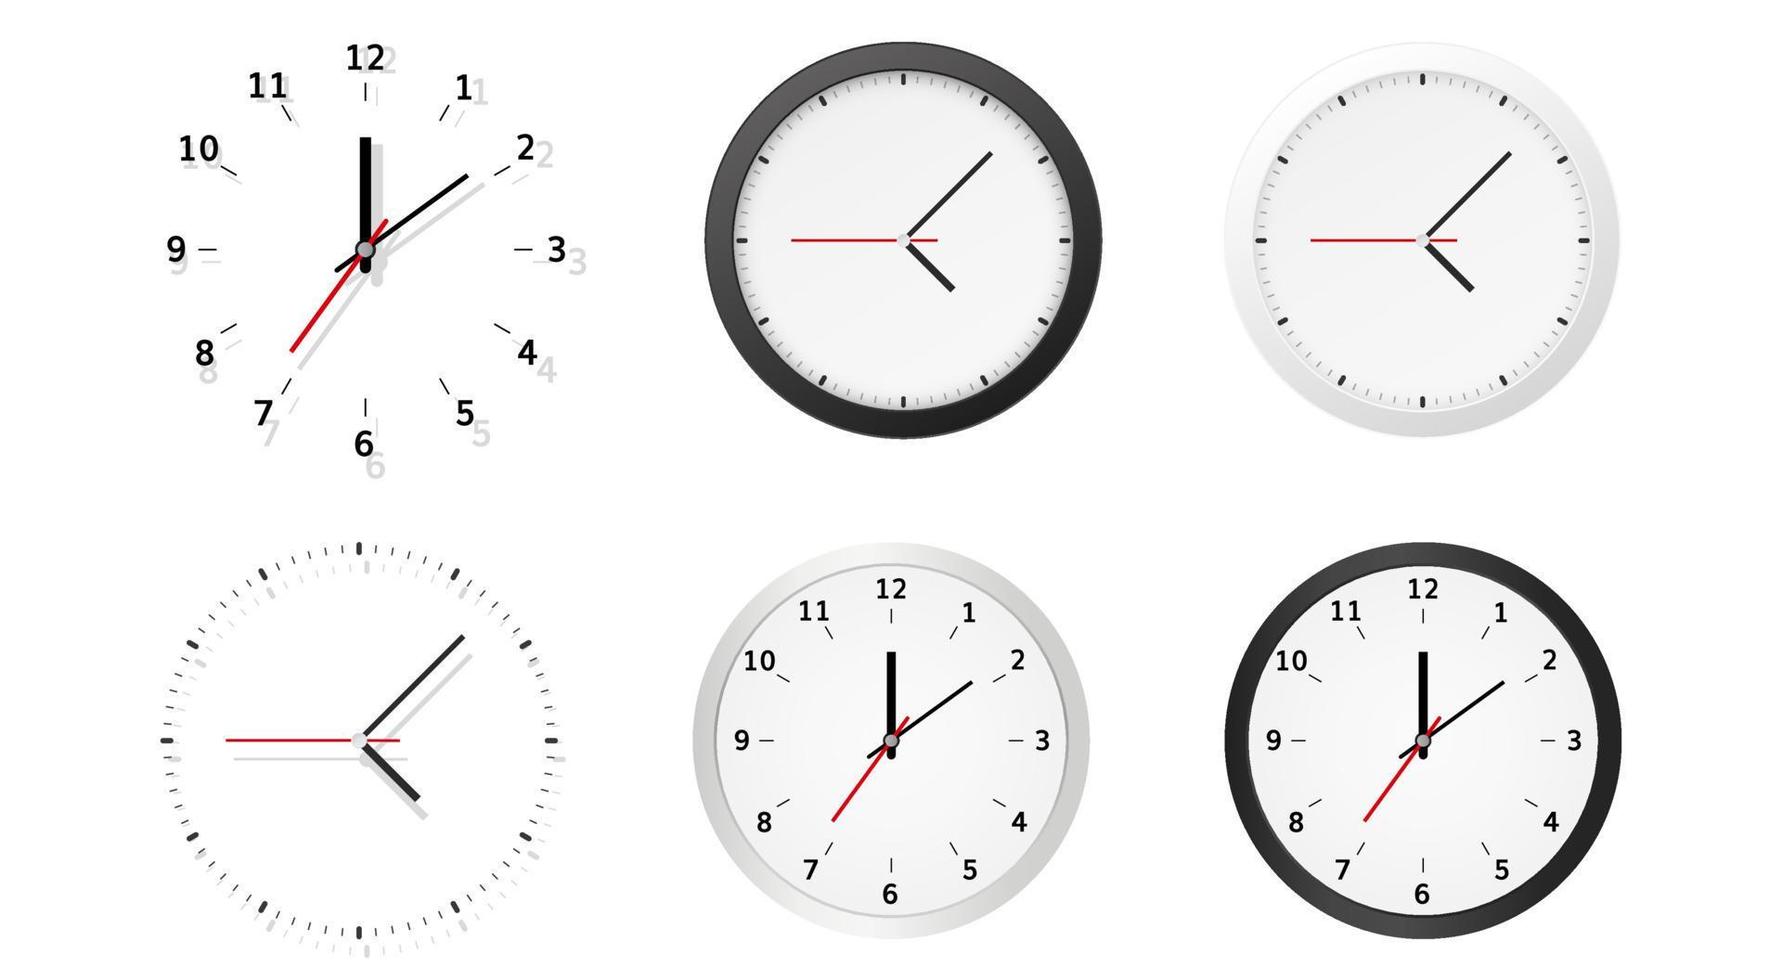 coleção de mostradores de relógio analógico redondo com ponteiros de horas, minutos e segundos isolados no fundo branco. indicação do tempo. ilustração vetorial realista moderna. vetor